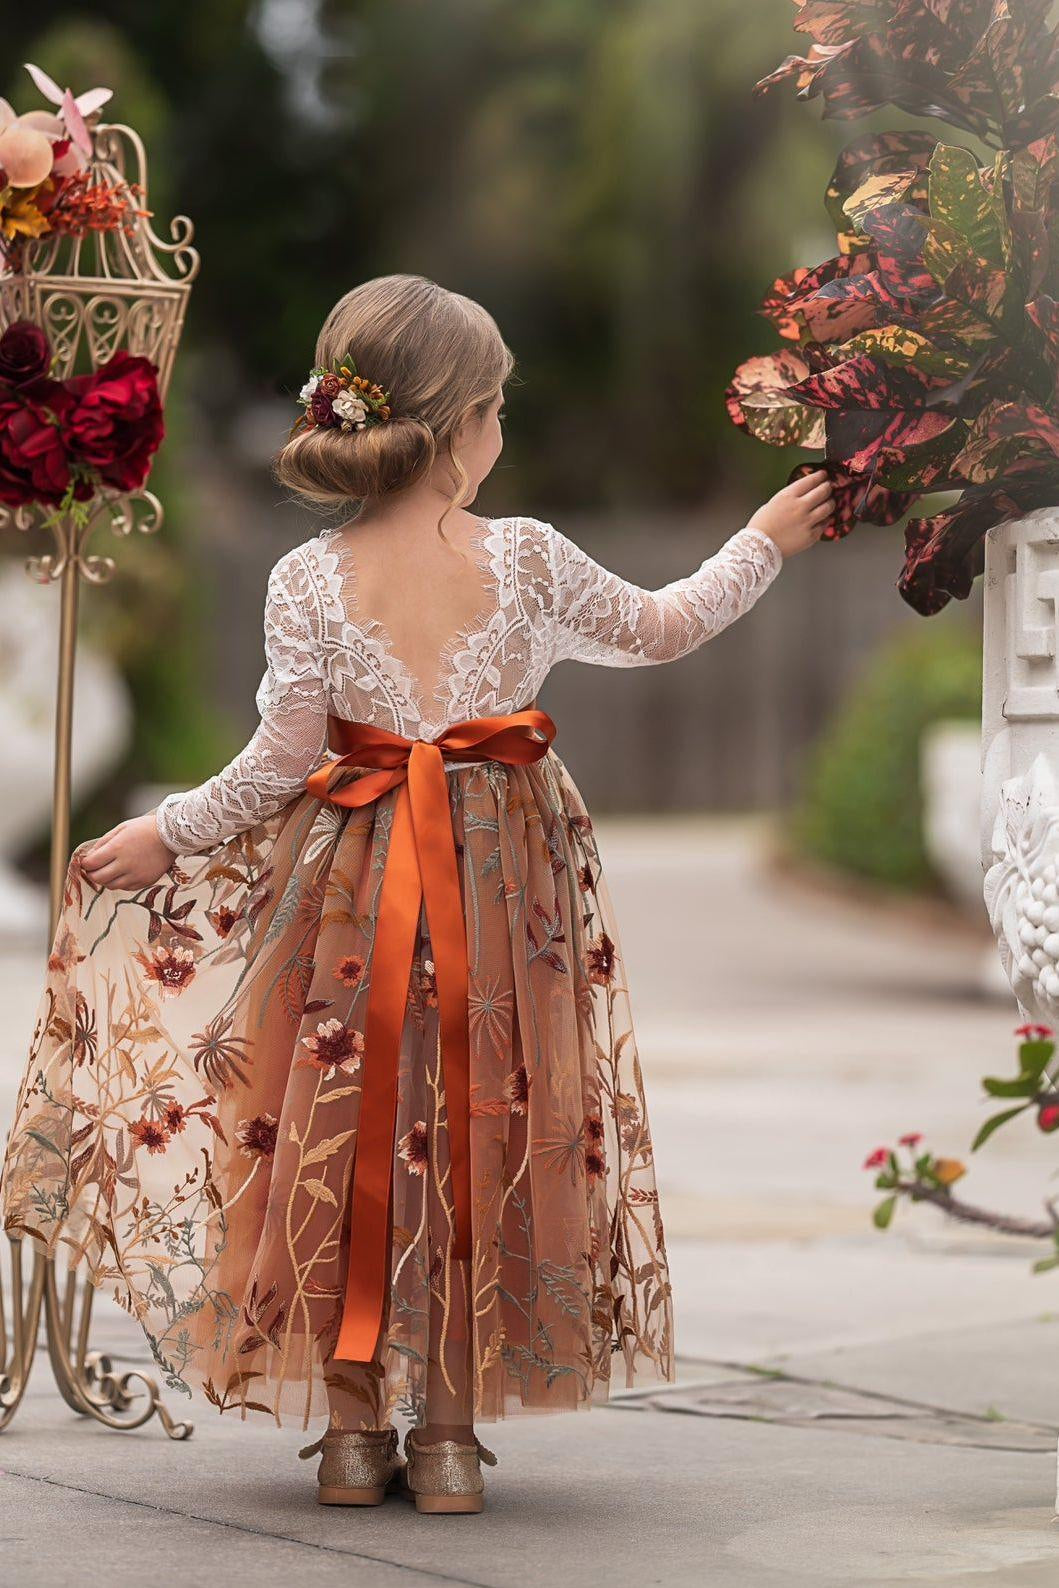 Long Sleeve Lace Tulle Flower Girl Dress for Fall Weddings - Burnt Orange - The Little Kitten Boutique